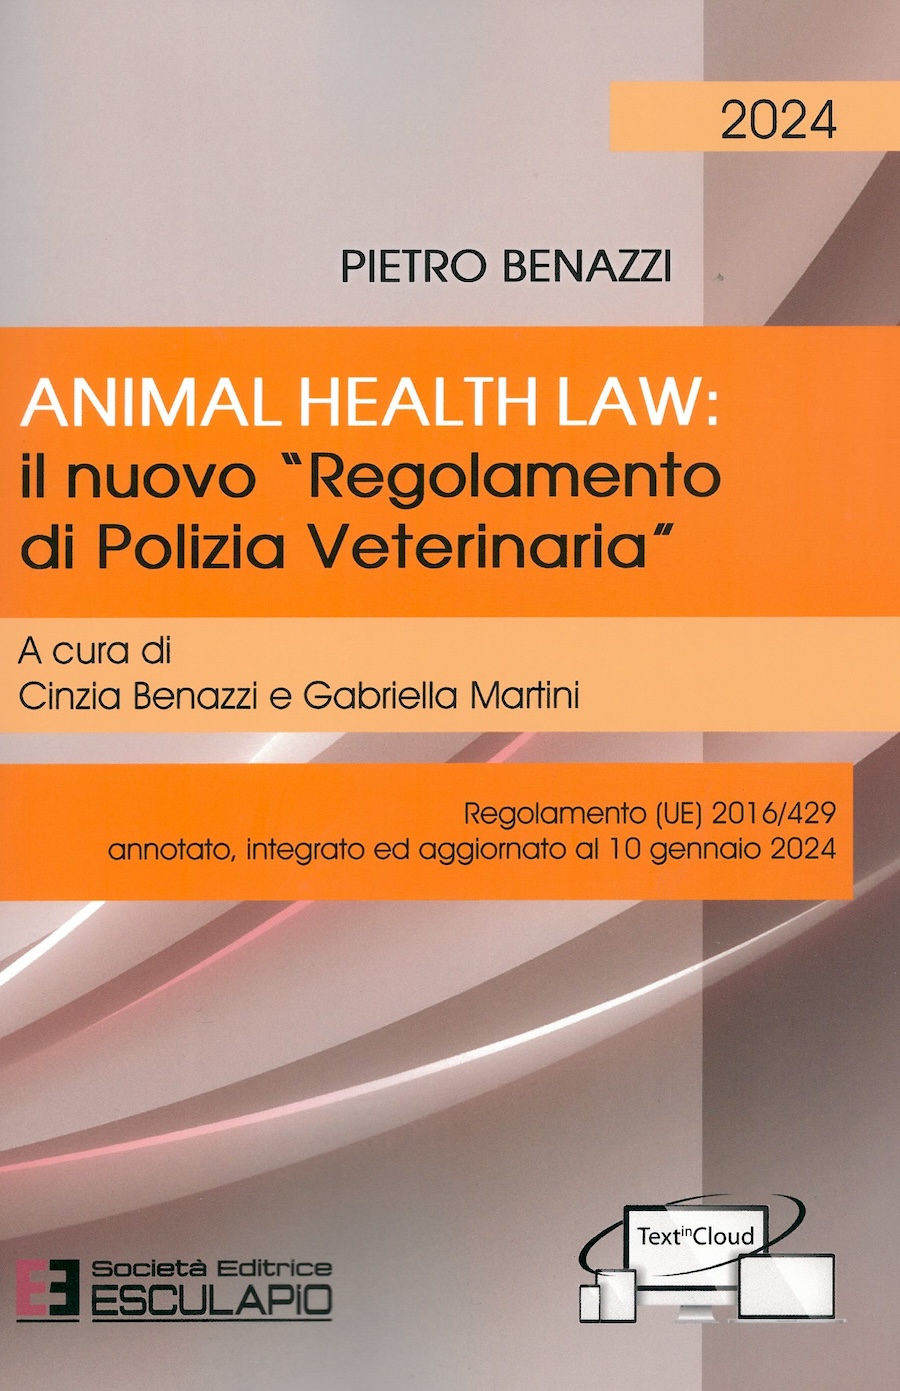 Animal Healt Law: il nuovo "Regolamento di polizia veterinaria"